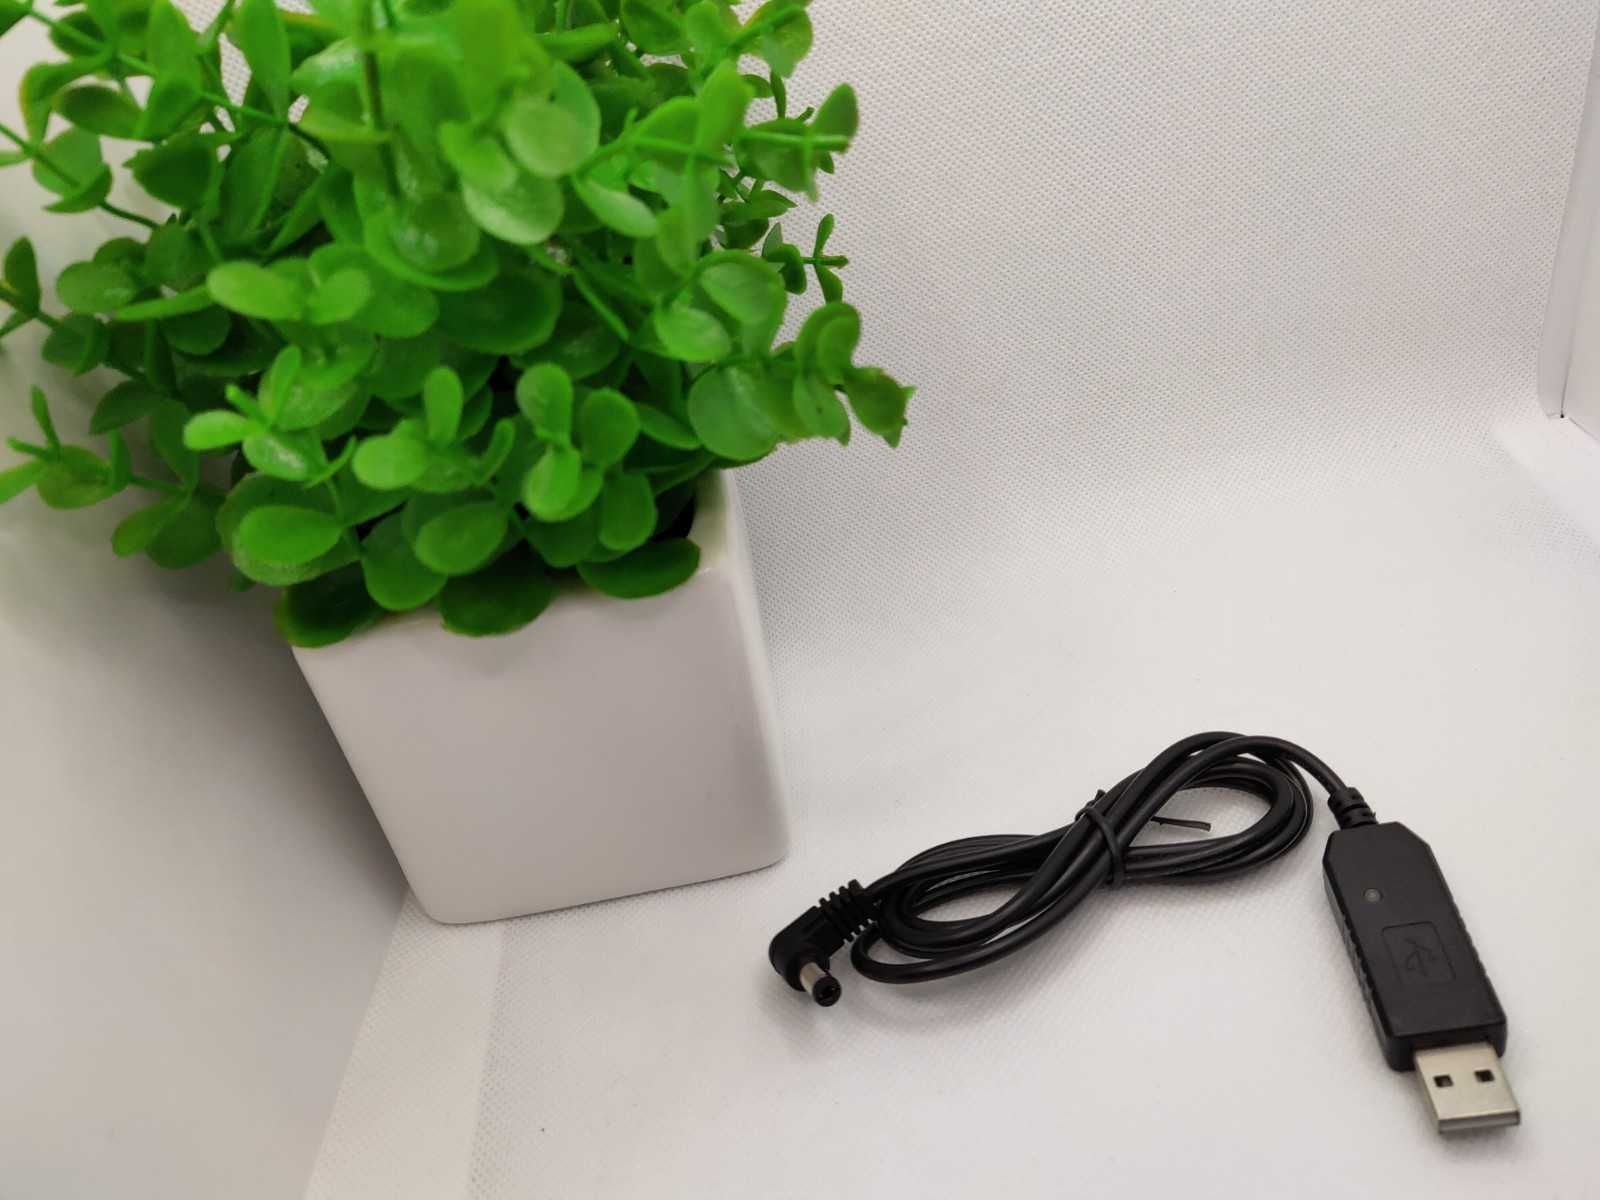 ⇒ USB/DC кабель для зарядки раций от Power Bank и др. устройств с USB